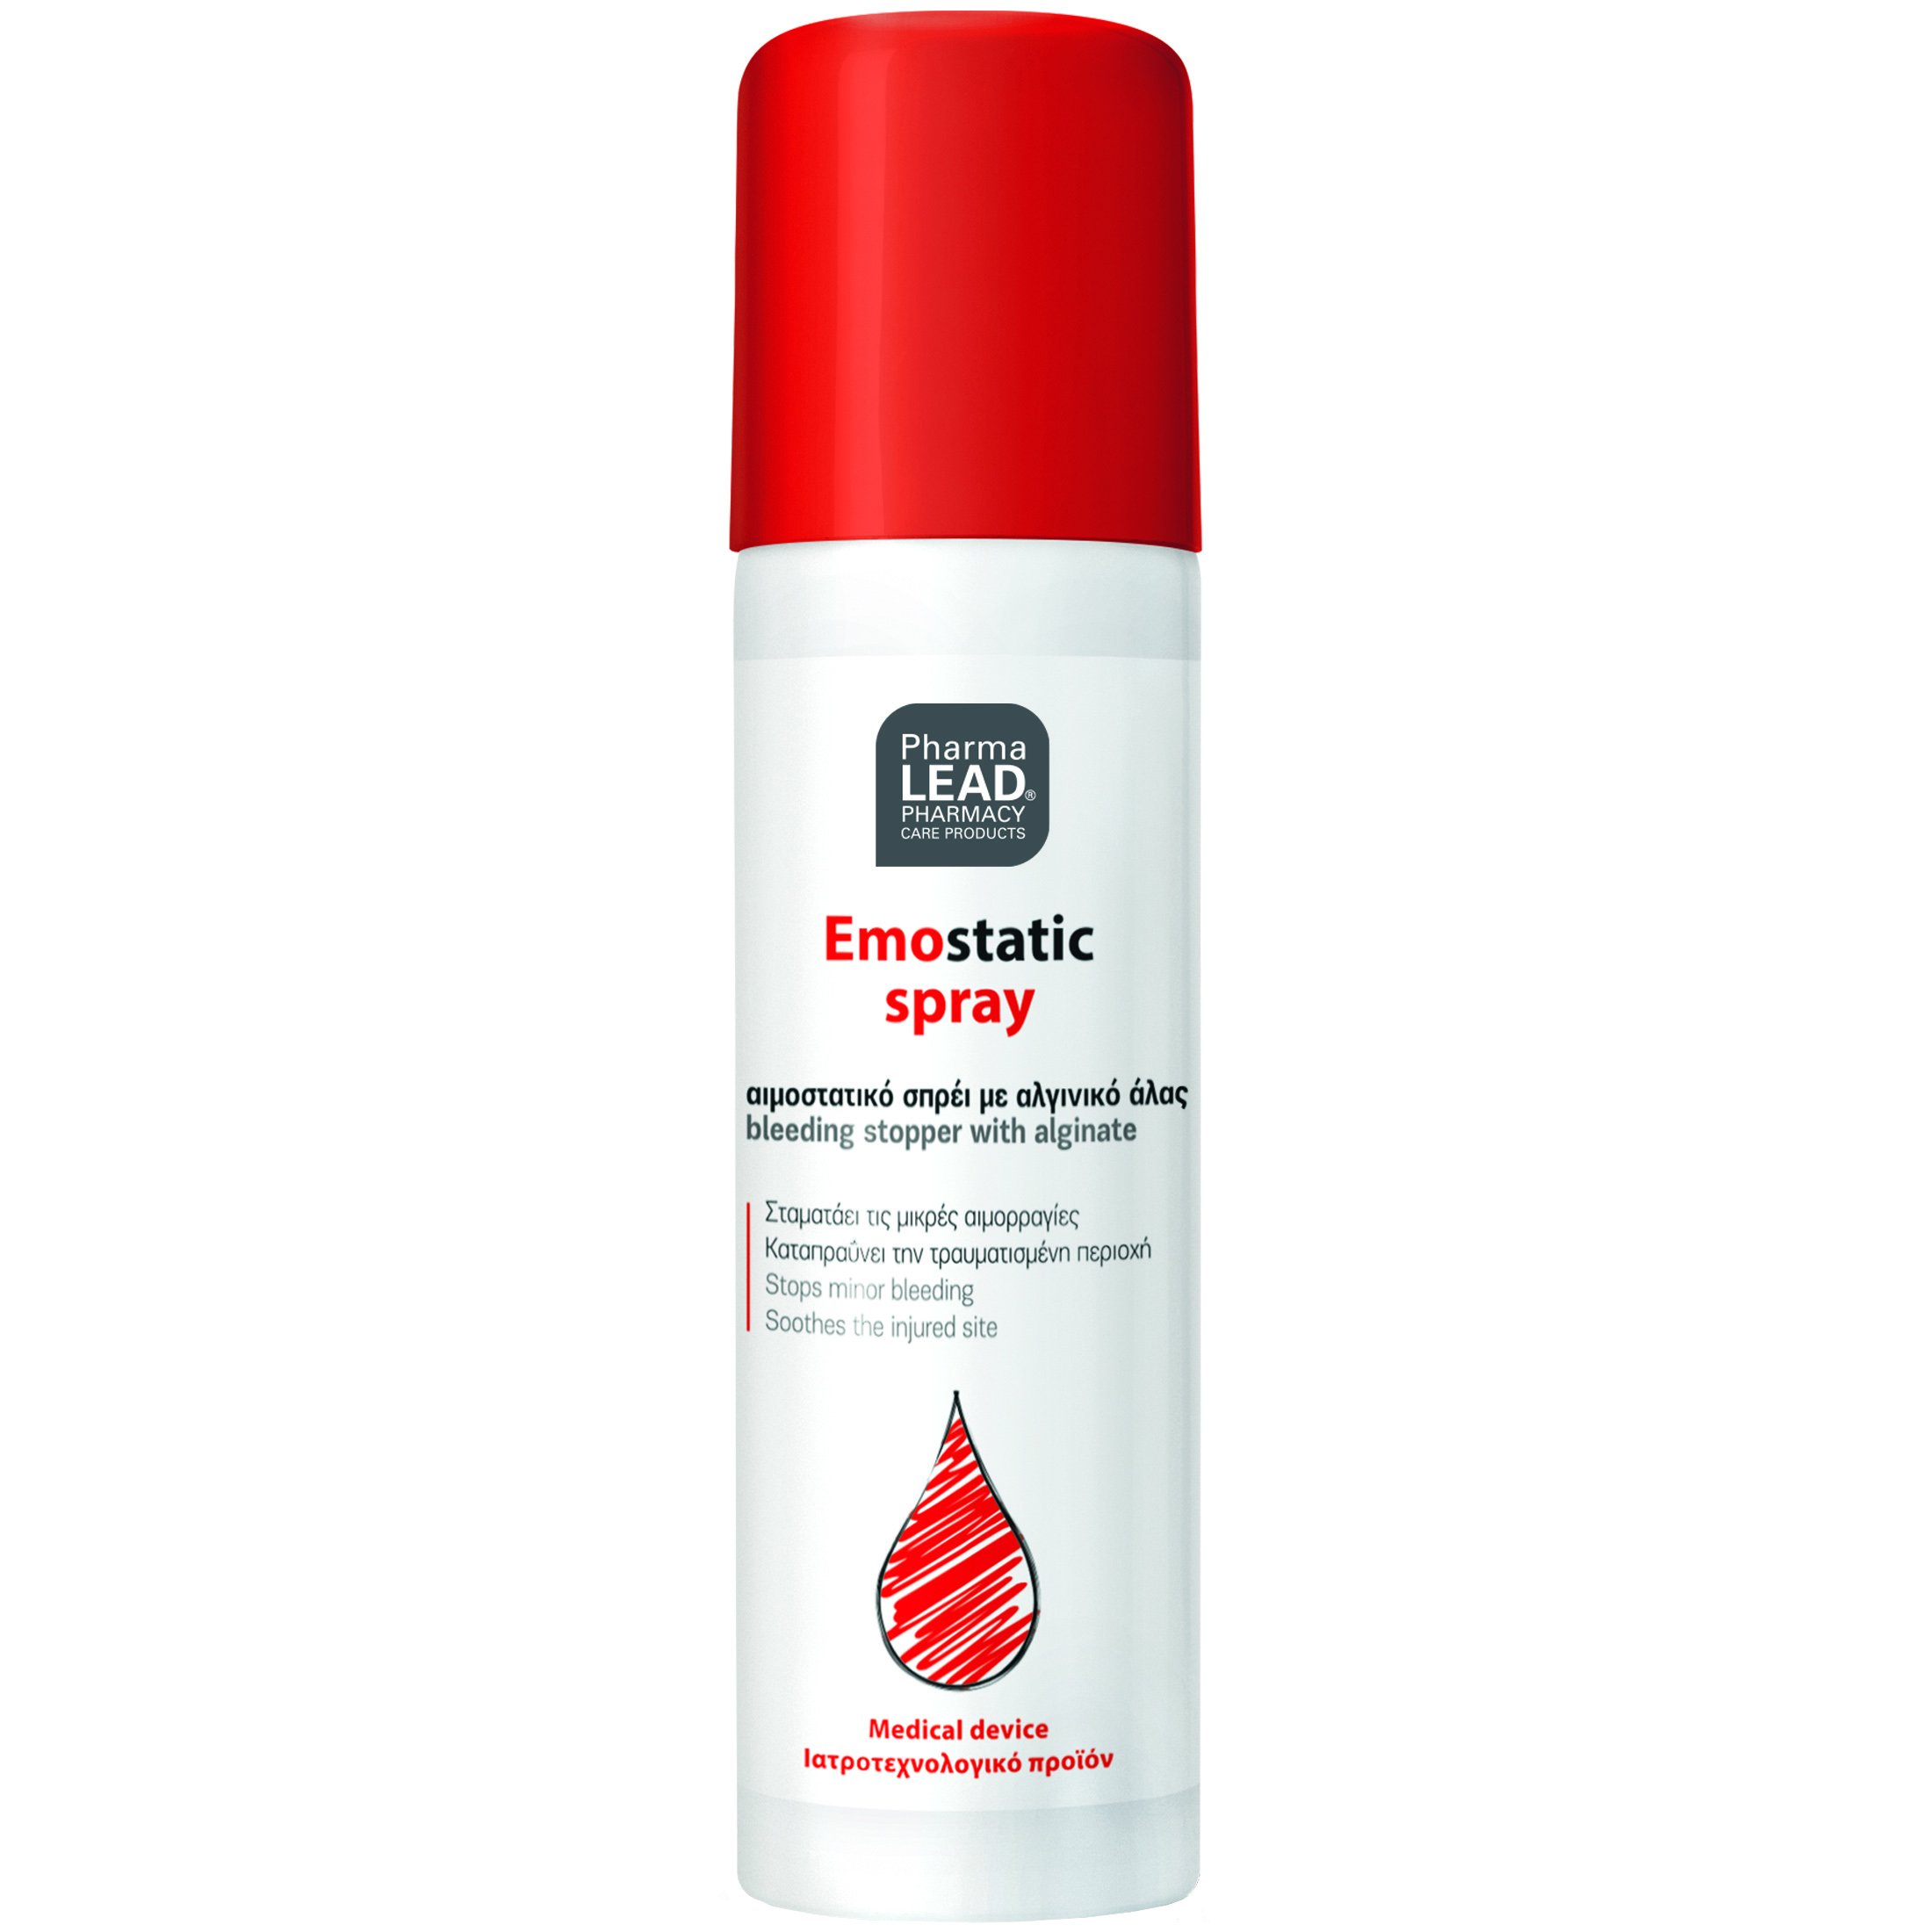 PharmaLead Αιμοστατικό Emostatic Spray για την Αποκατάσταση Επιφανειακών Πληγών 60ml